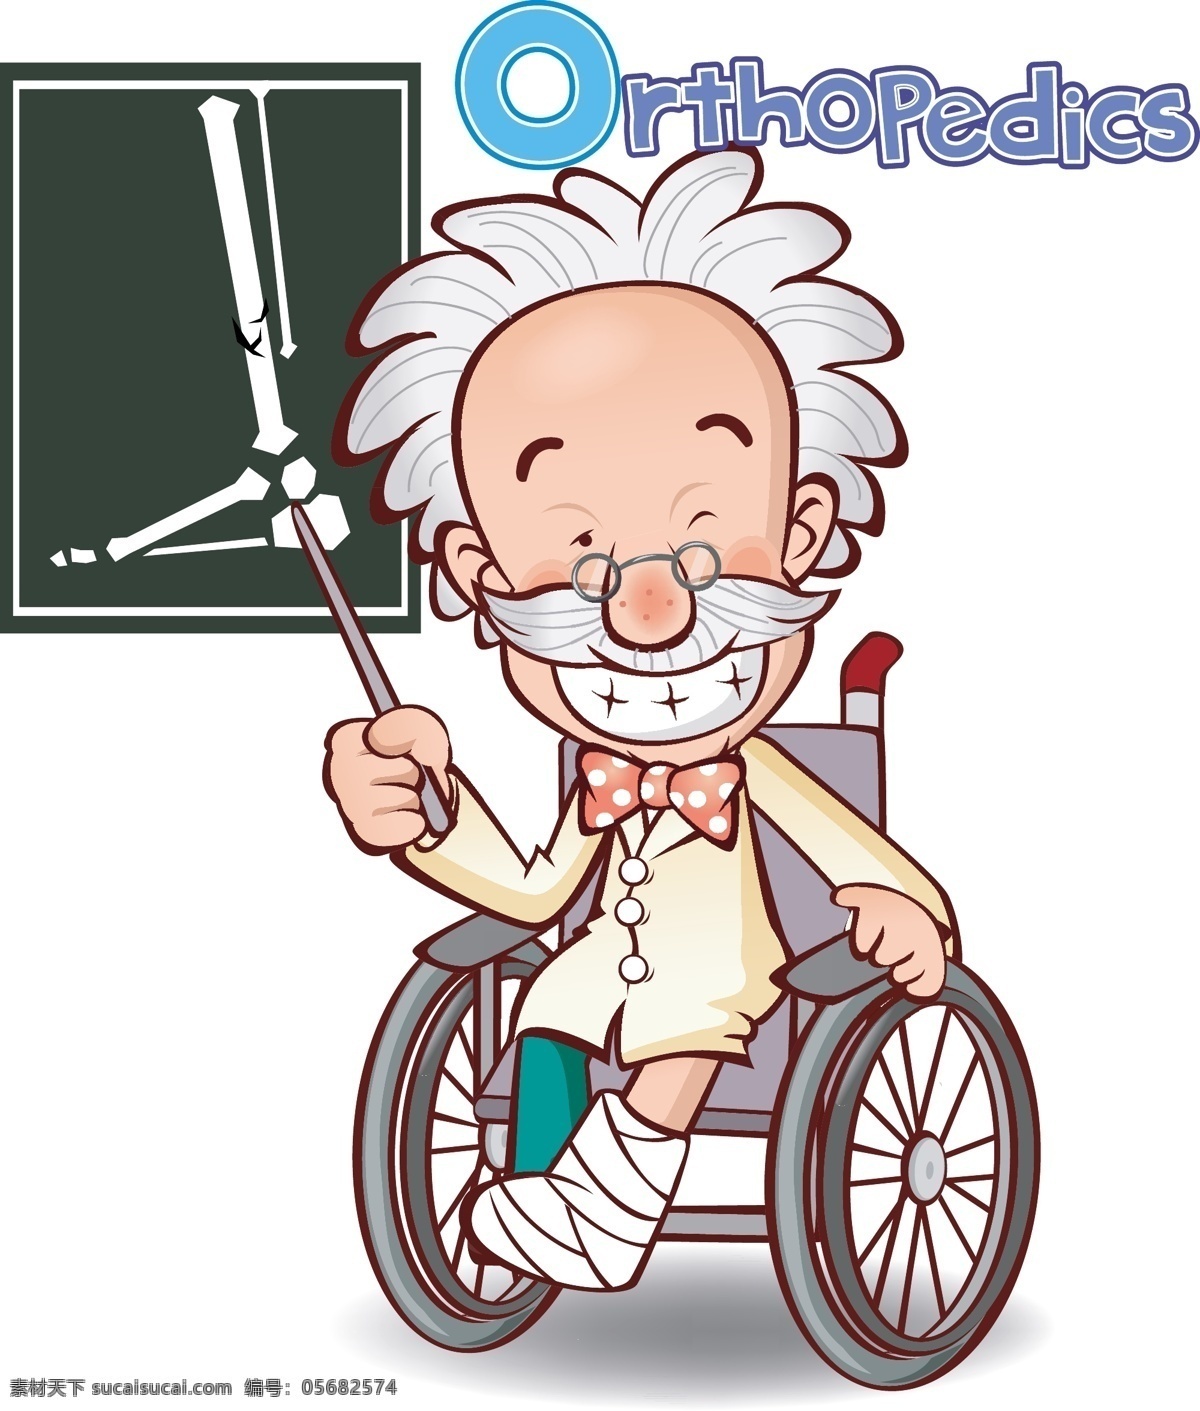 病人 卡通 动漫 插画 动漫动画 动漫人物 积极 老爷爷 乐观 轮椅 医院 受伤 腿伤 可爱